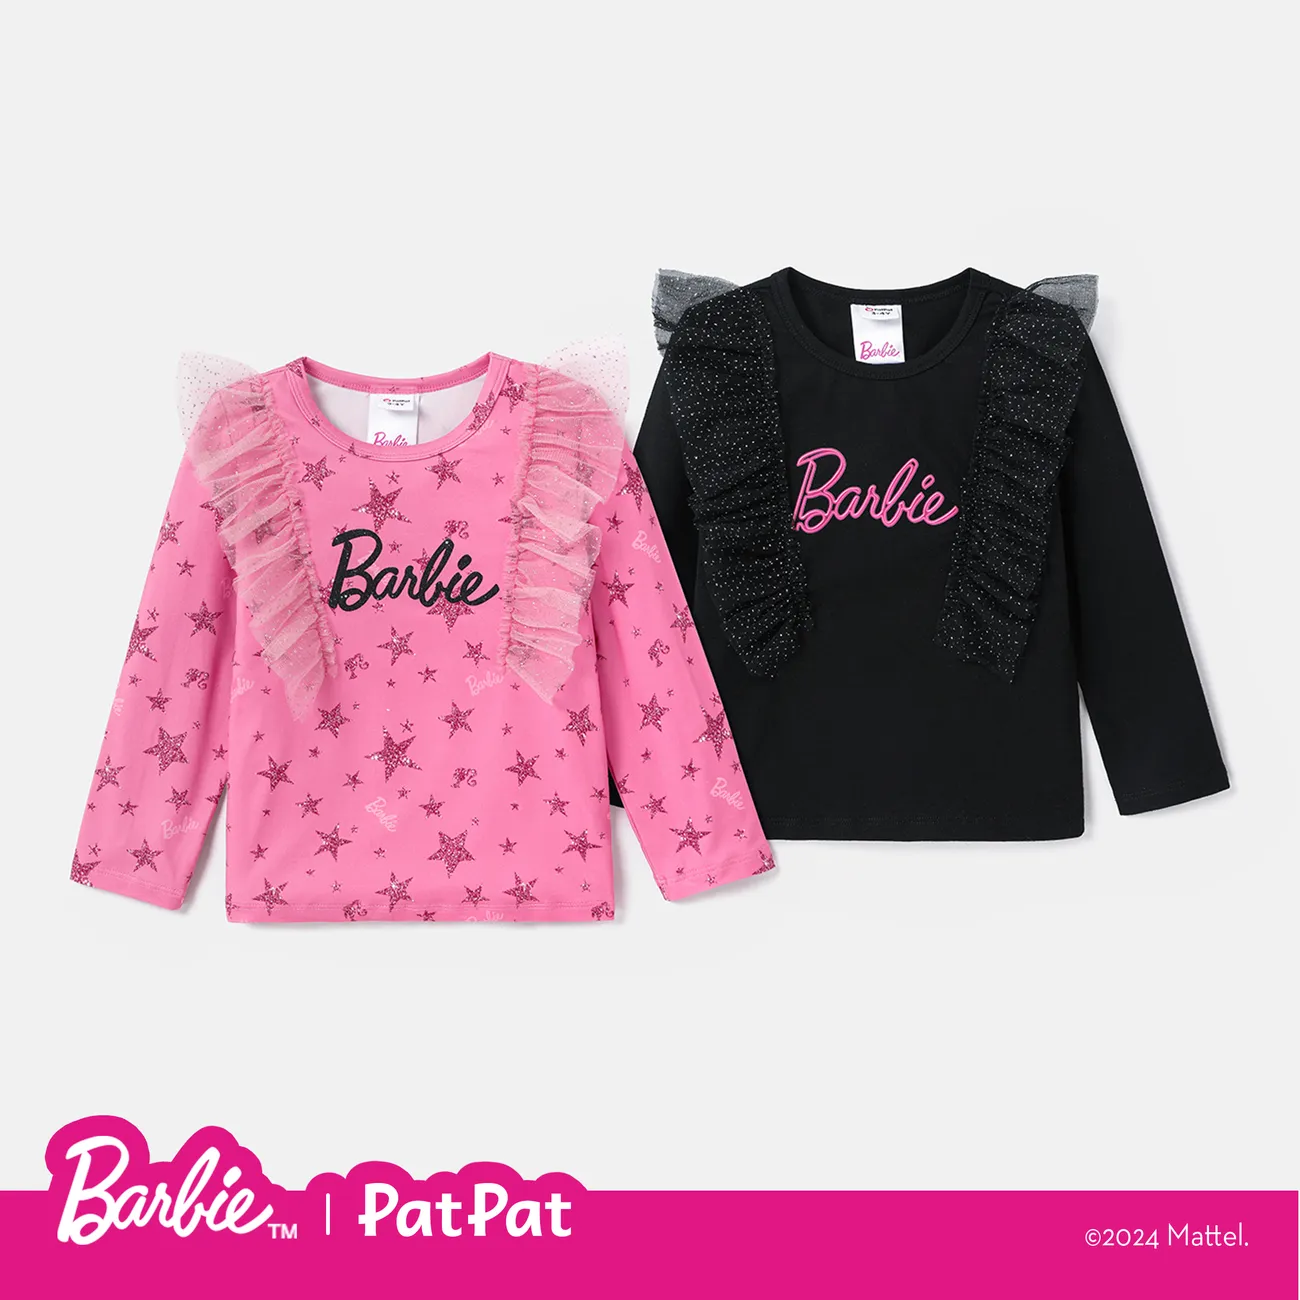 Barbie Criança Menina Extremidades franzidas Infantil Manga comprida T-shirts Rosa big image 1